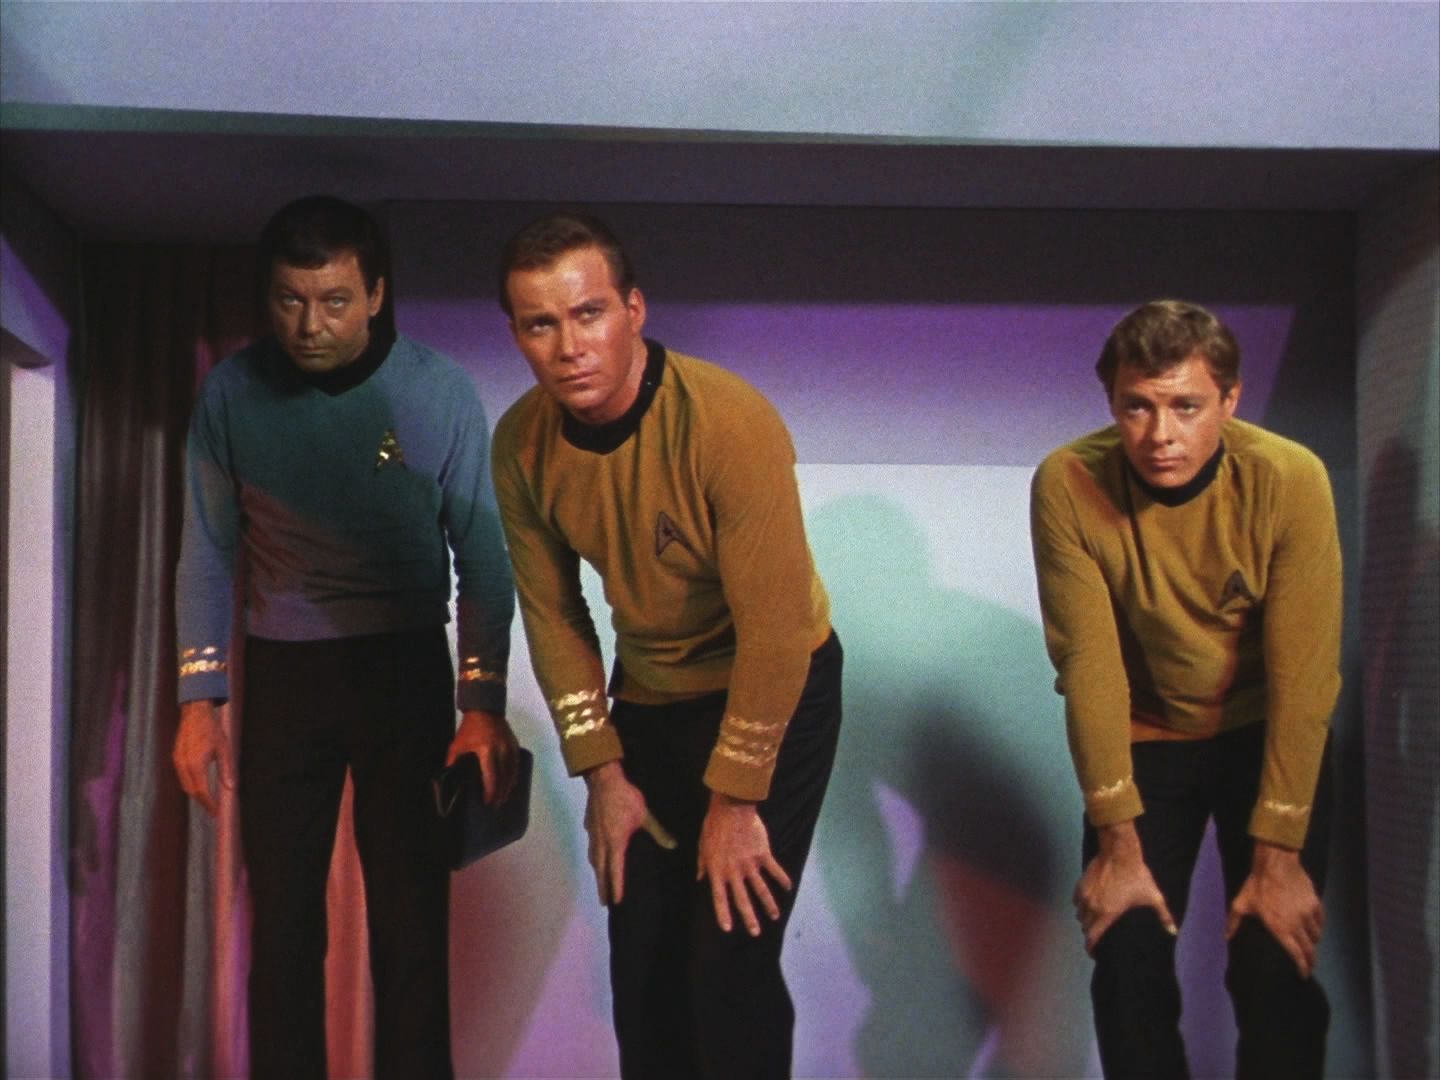 Potom ale zachytili volání o pomoc, které Fesarius nemohl zachytit. Kirk, McCoy a poručík Bailey se transportují na Balokovu loď, aby mu pomohli.